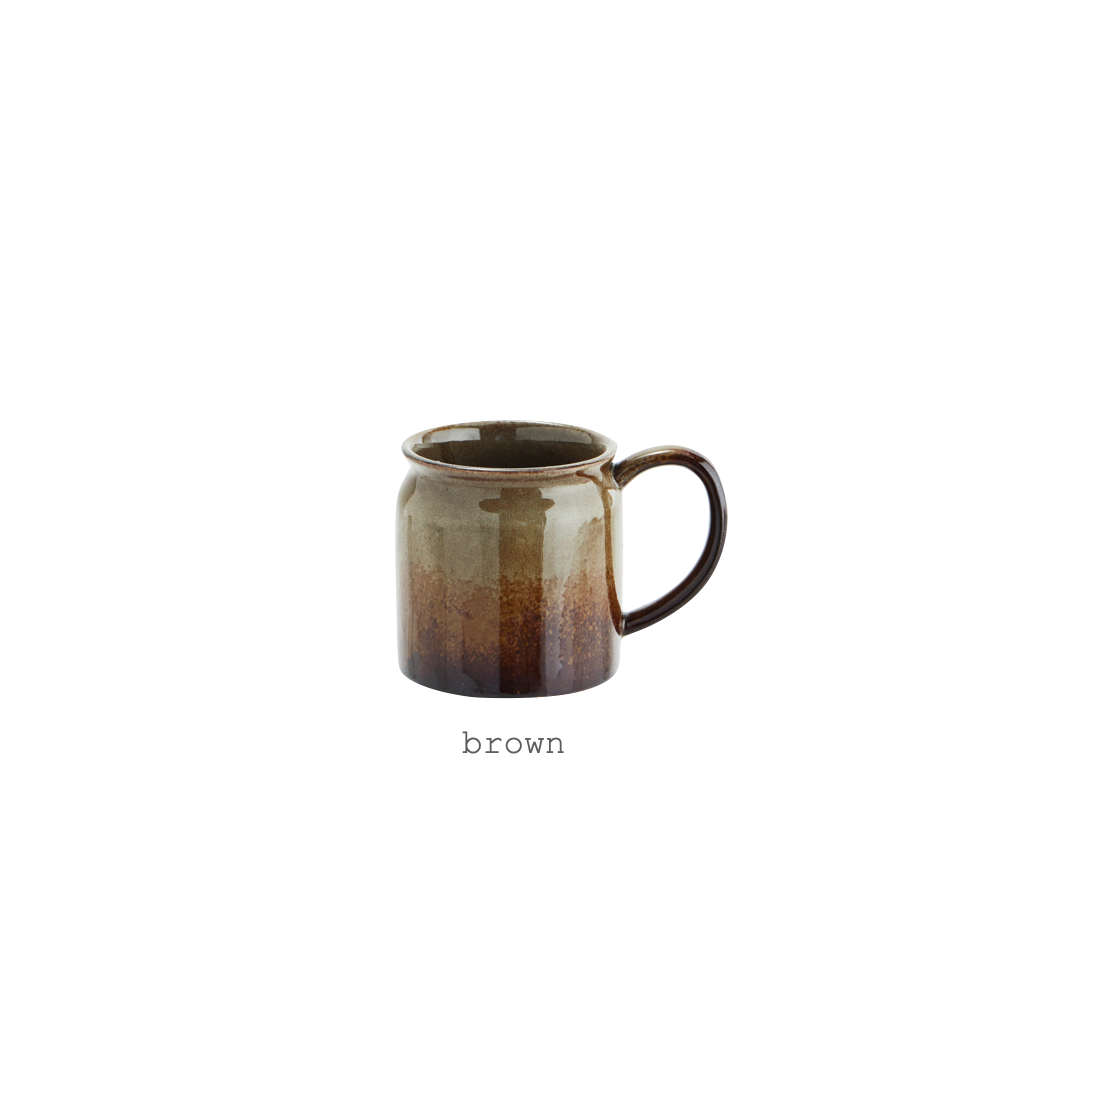 stoneware mug with handle